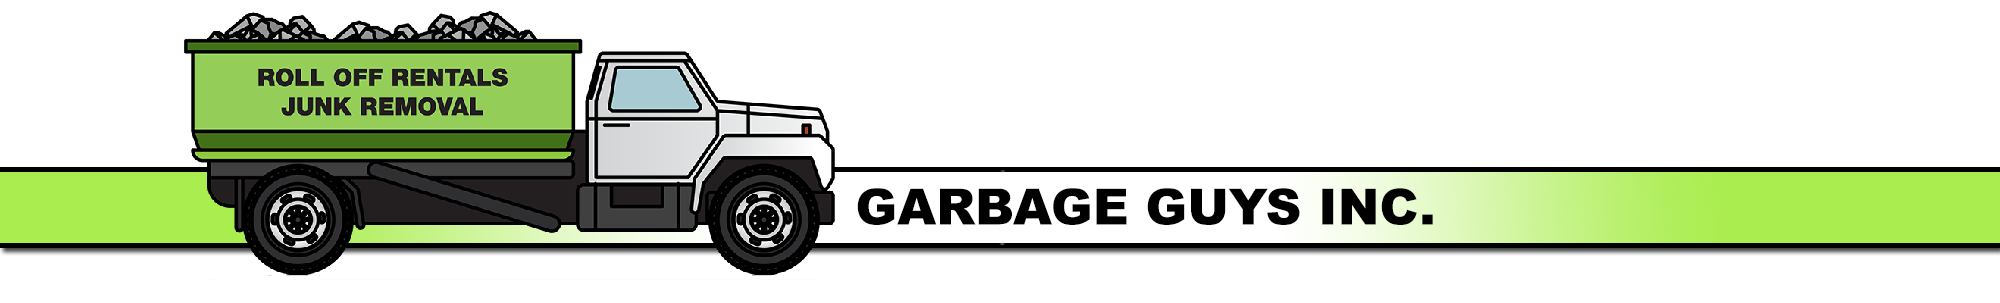 Garbage Guys